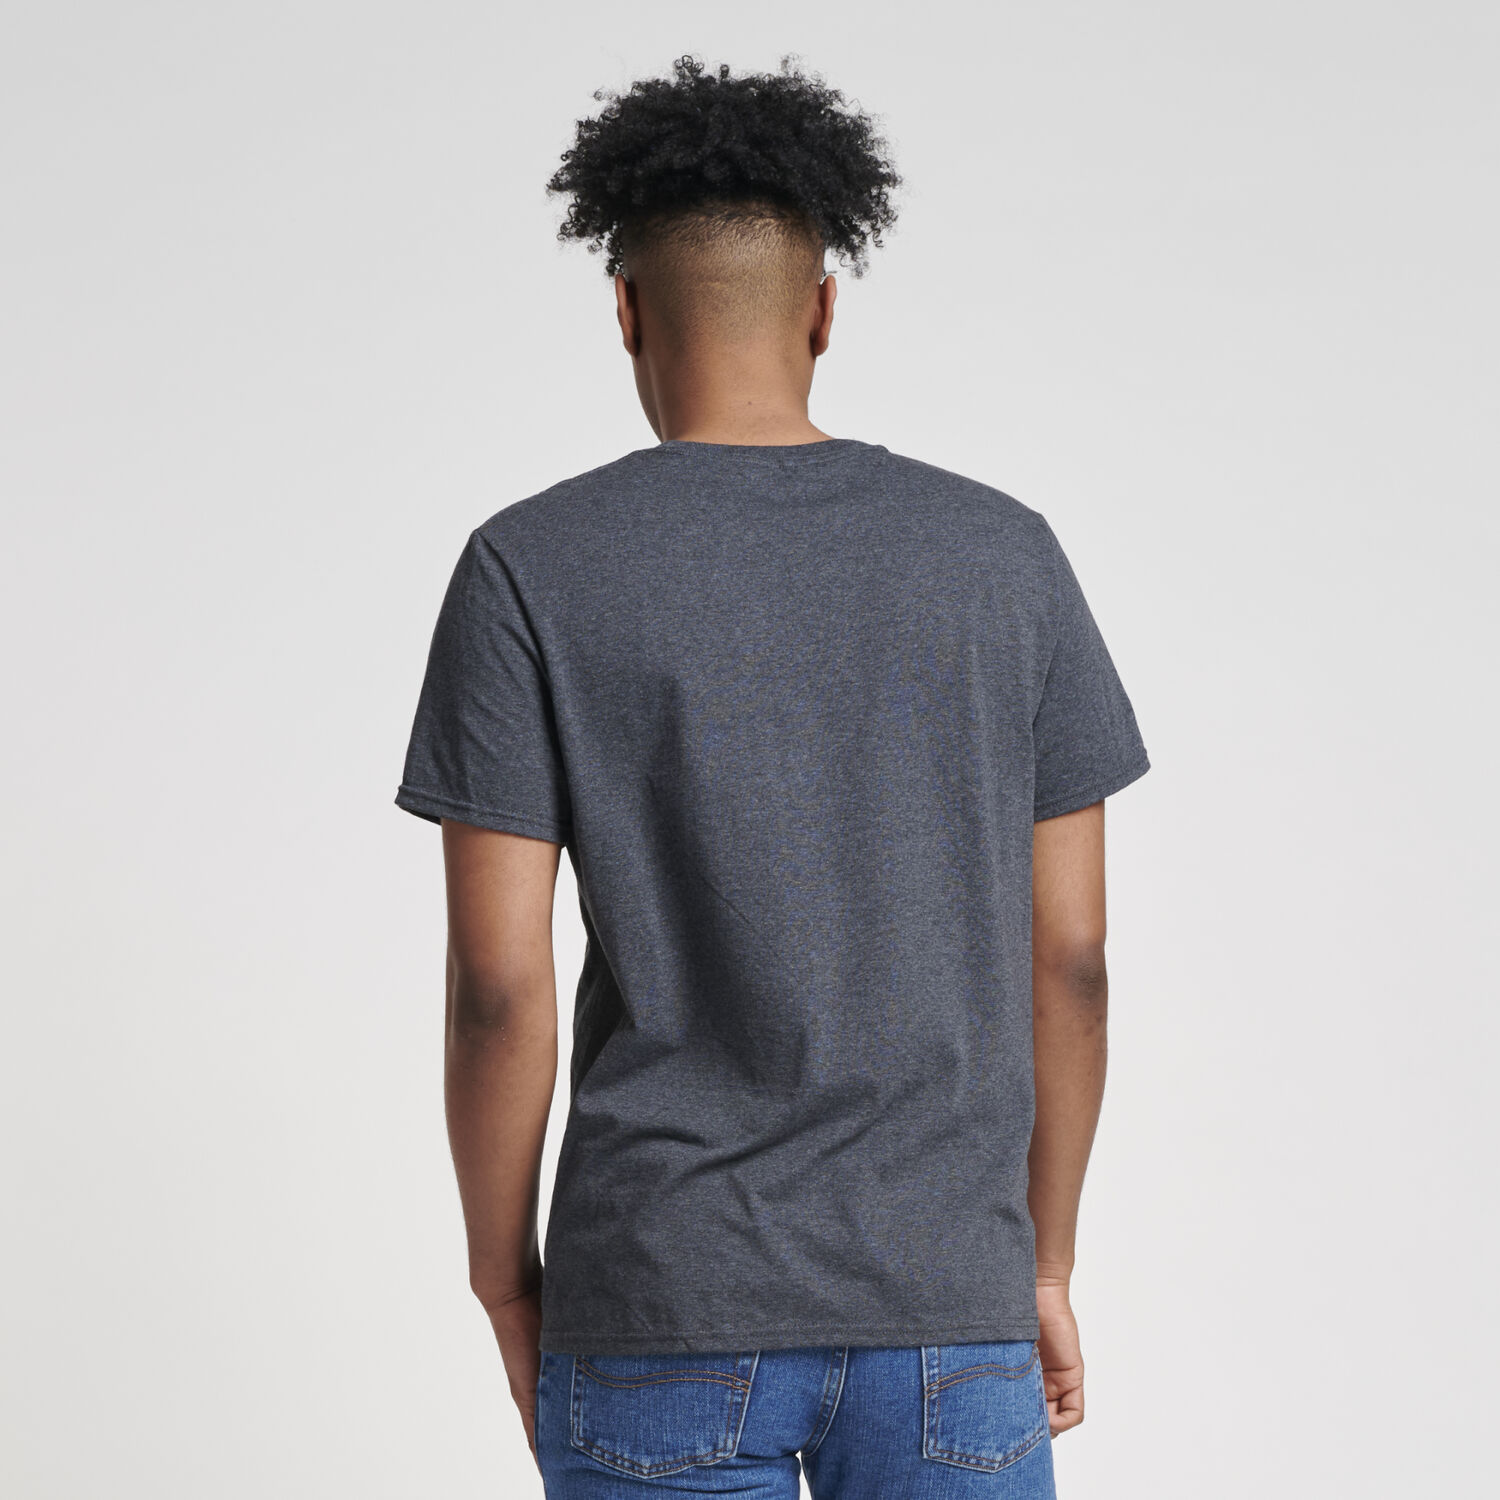 Men's Cotton Crew Neck Short Sleeve T-Shirts, Bulk Tshirt Color Mix